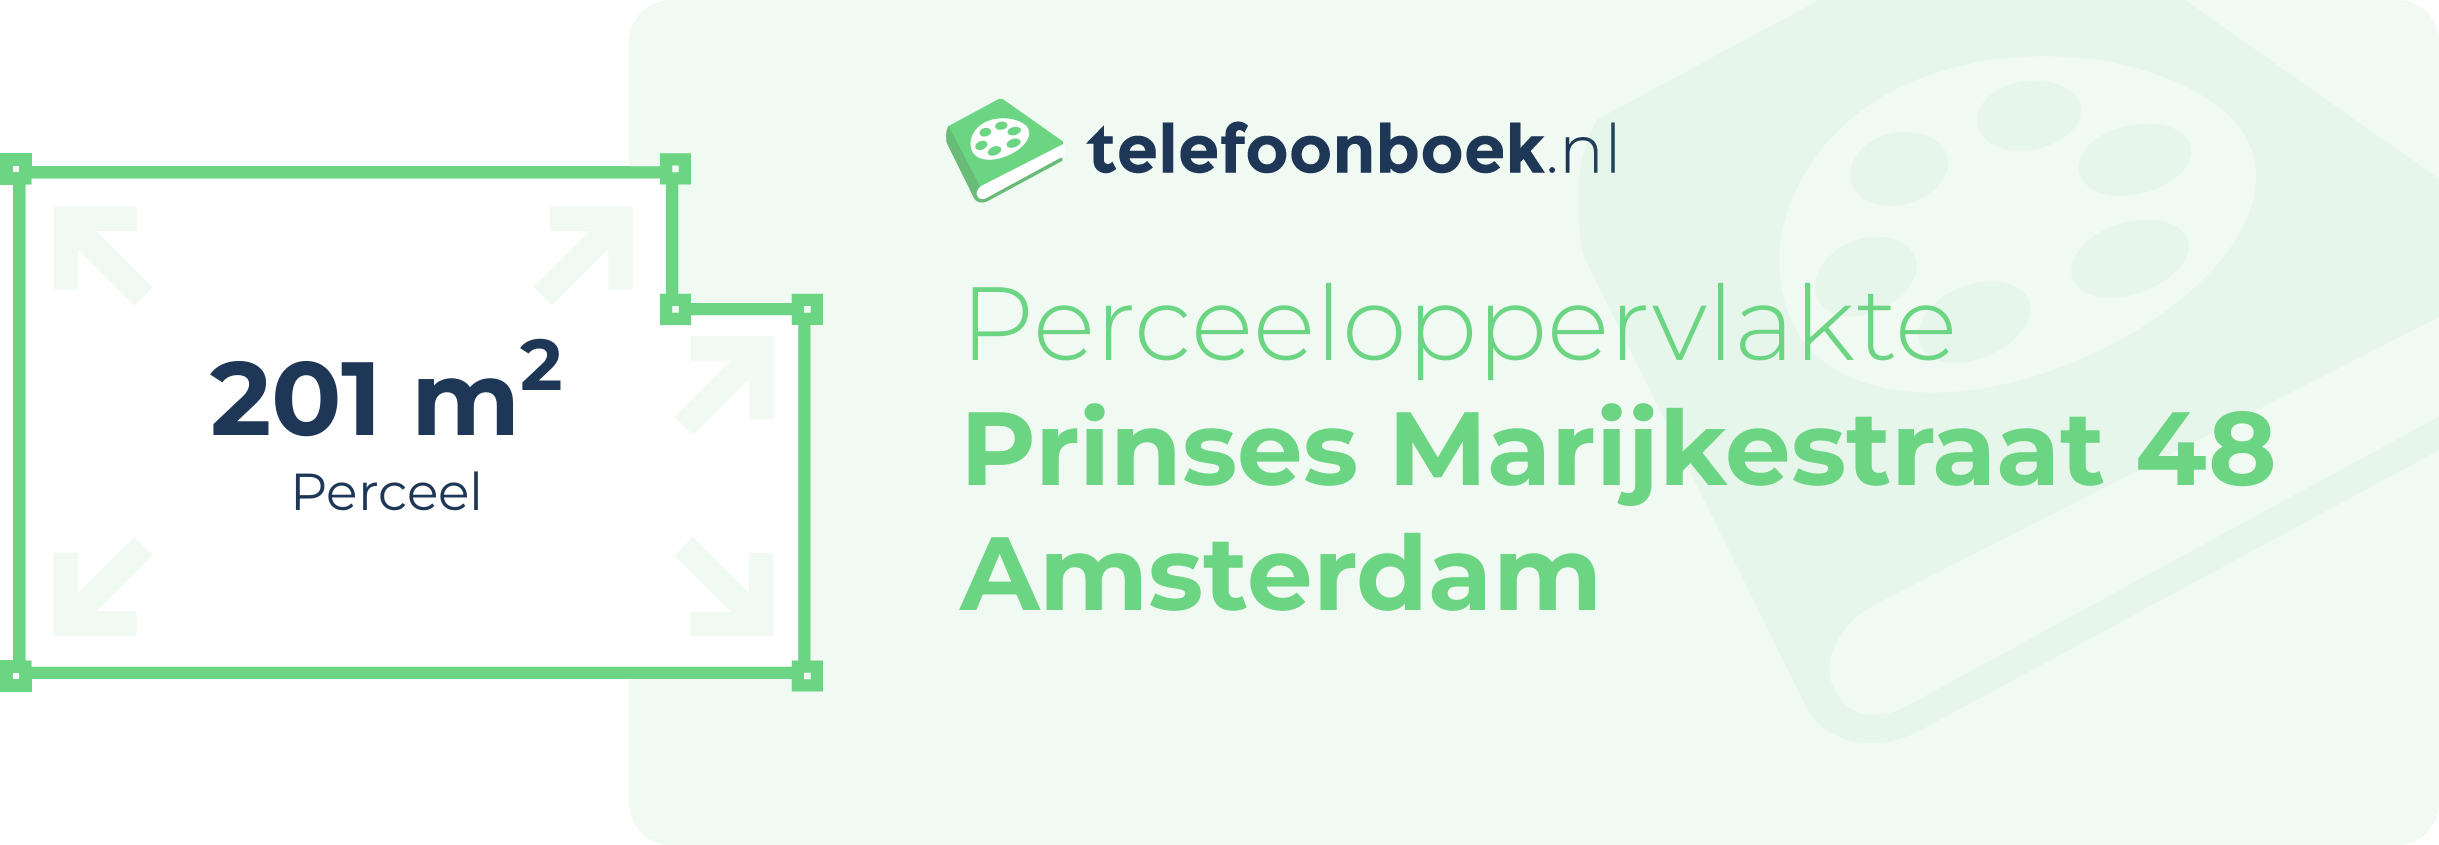 Perceeloppervlakte Prinses Marijkestraat 48 Amsterdam